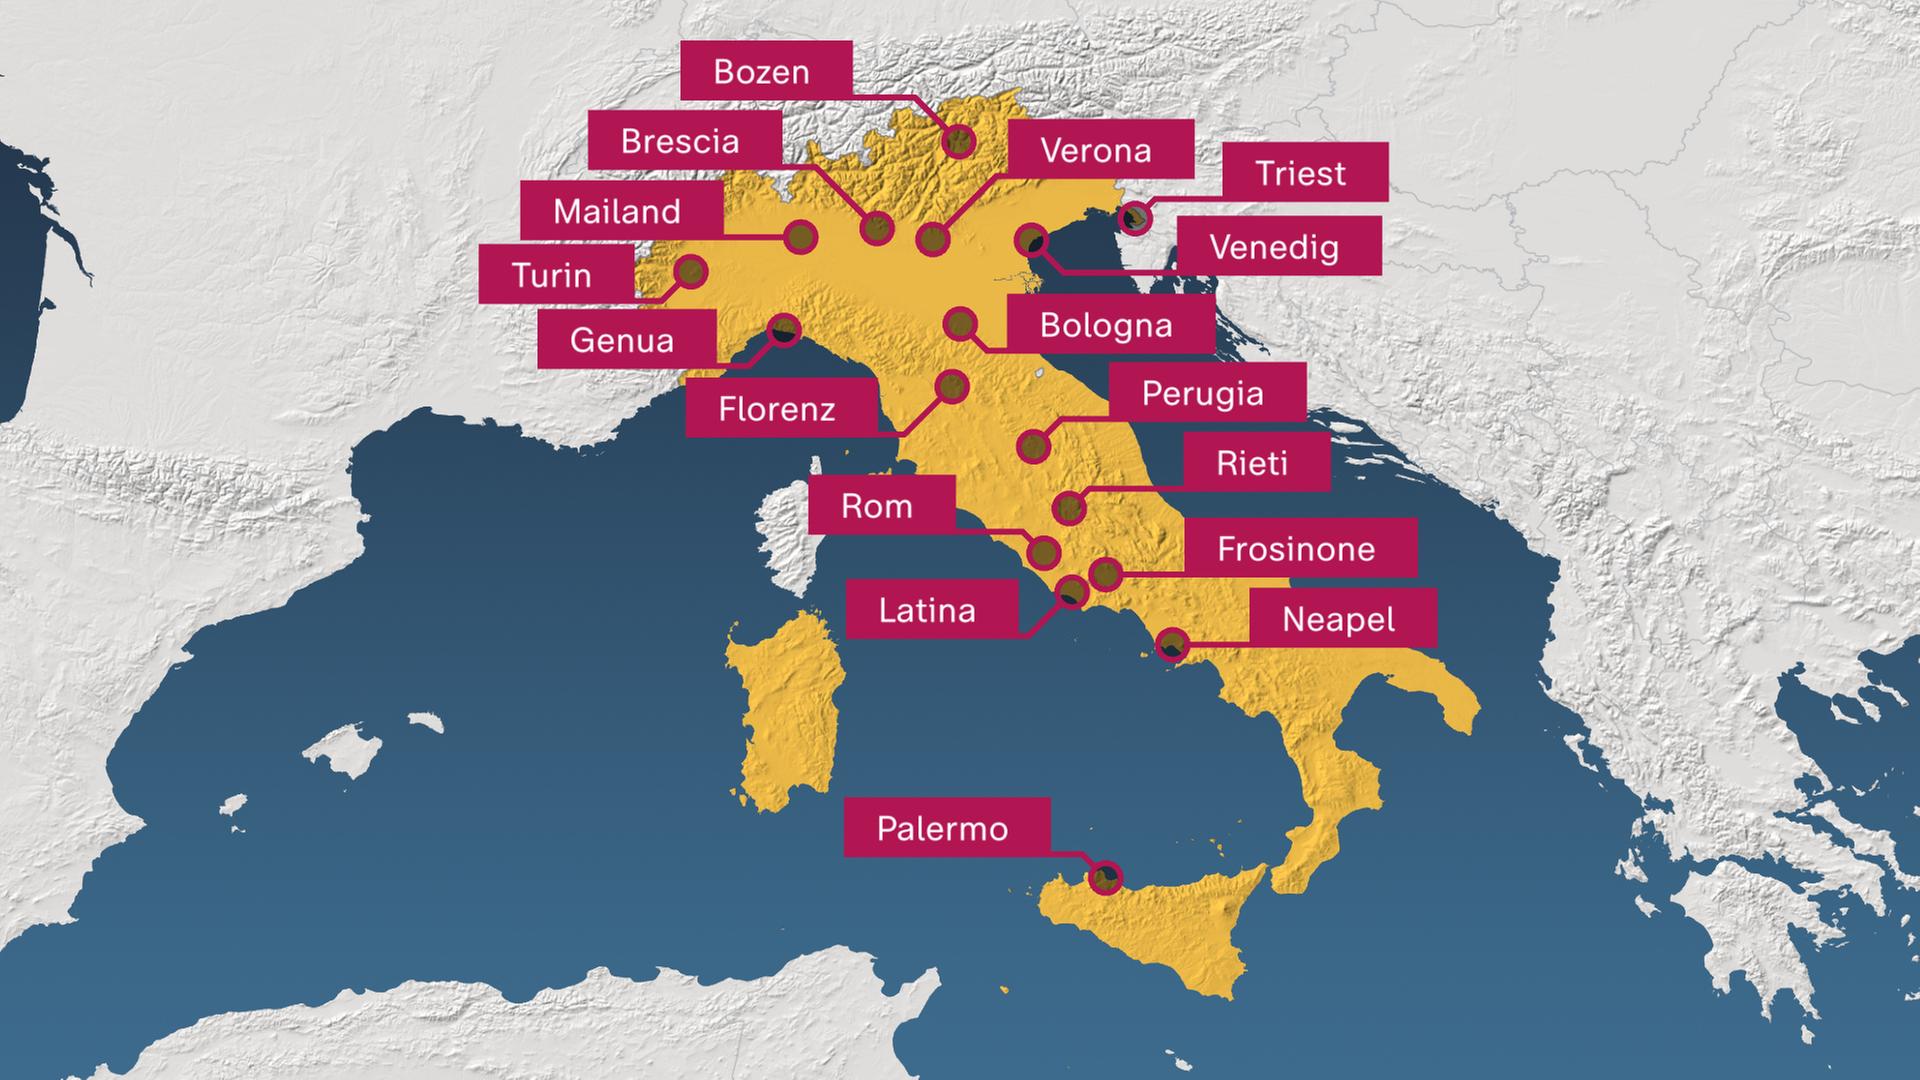 Eine Karte von Italien, auf der 16 größere Städte eingezeichnet sind, in denen die höchste Hitzealarmstufe ausgerufen wurde.